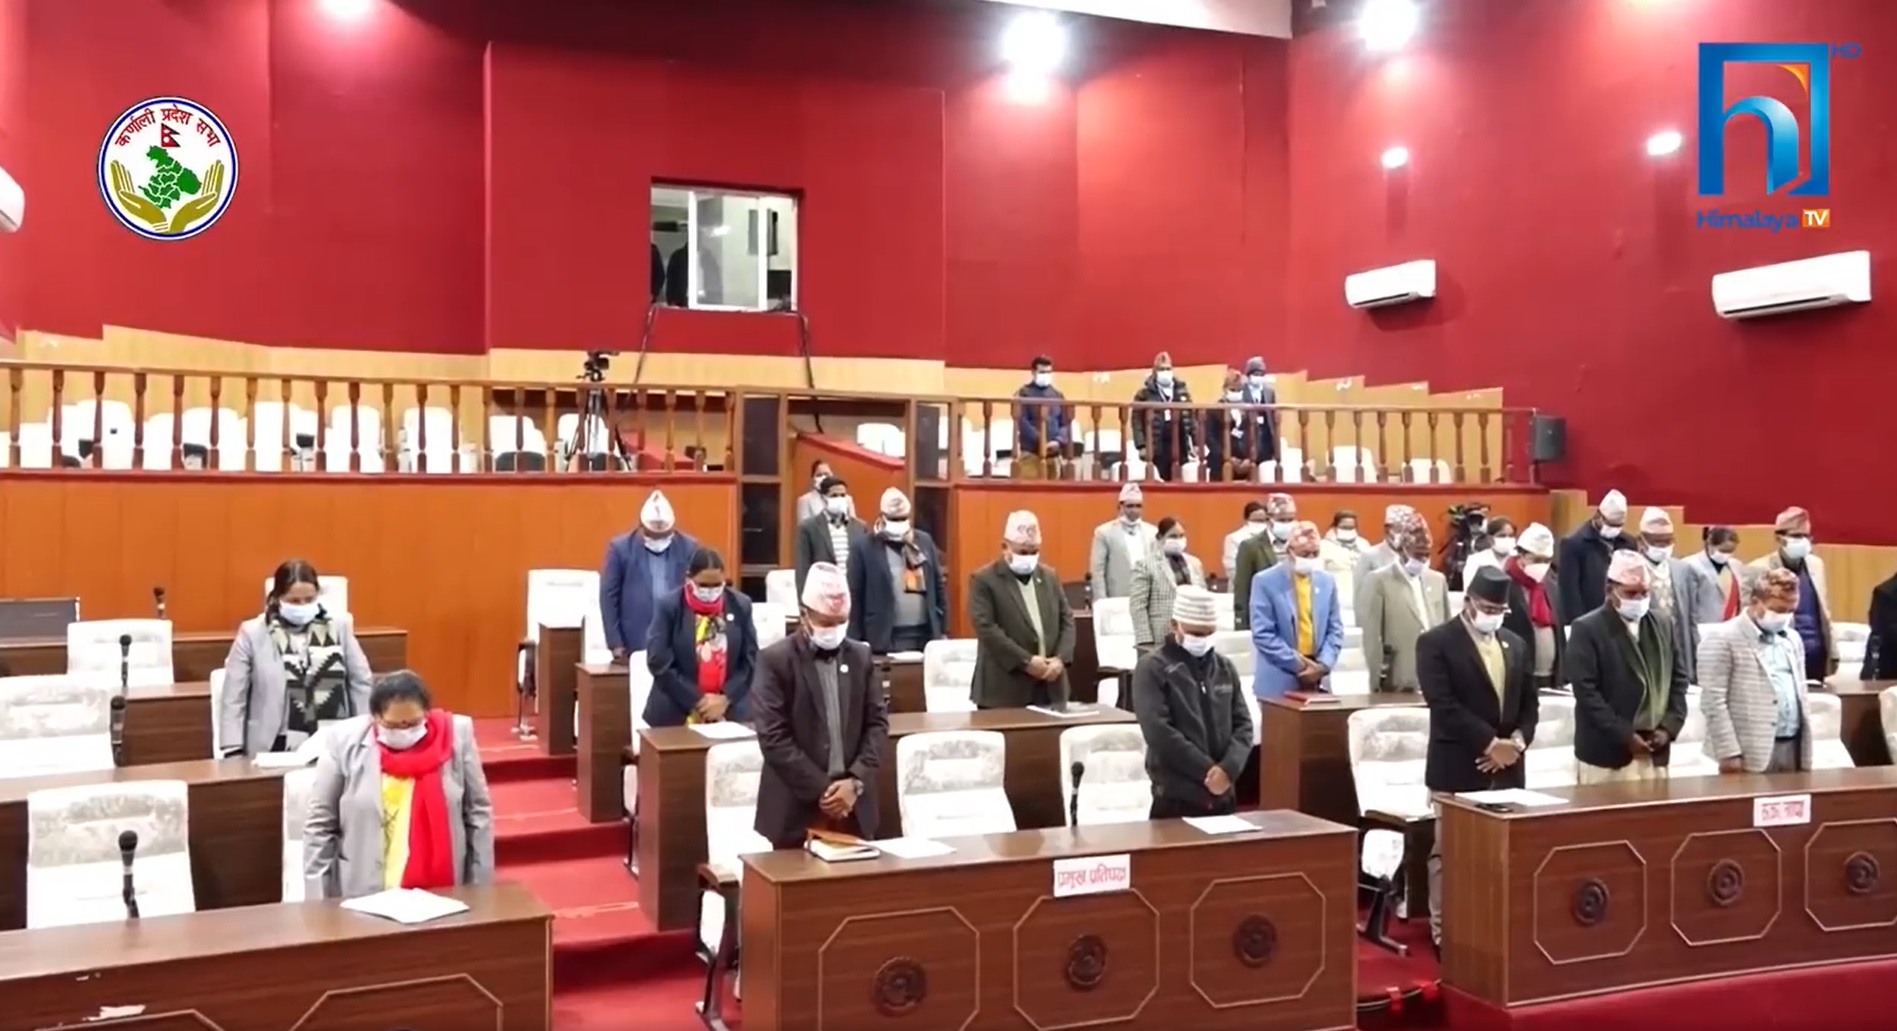 कर्णाली प्रदेश : निर्वाचनमा दल परिर्वतन, पत्याएनन् मतदाताले  (भिडियो रिपोर्टसहित)